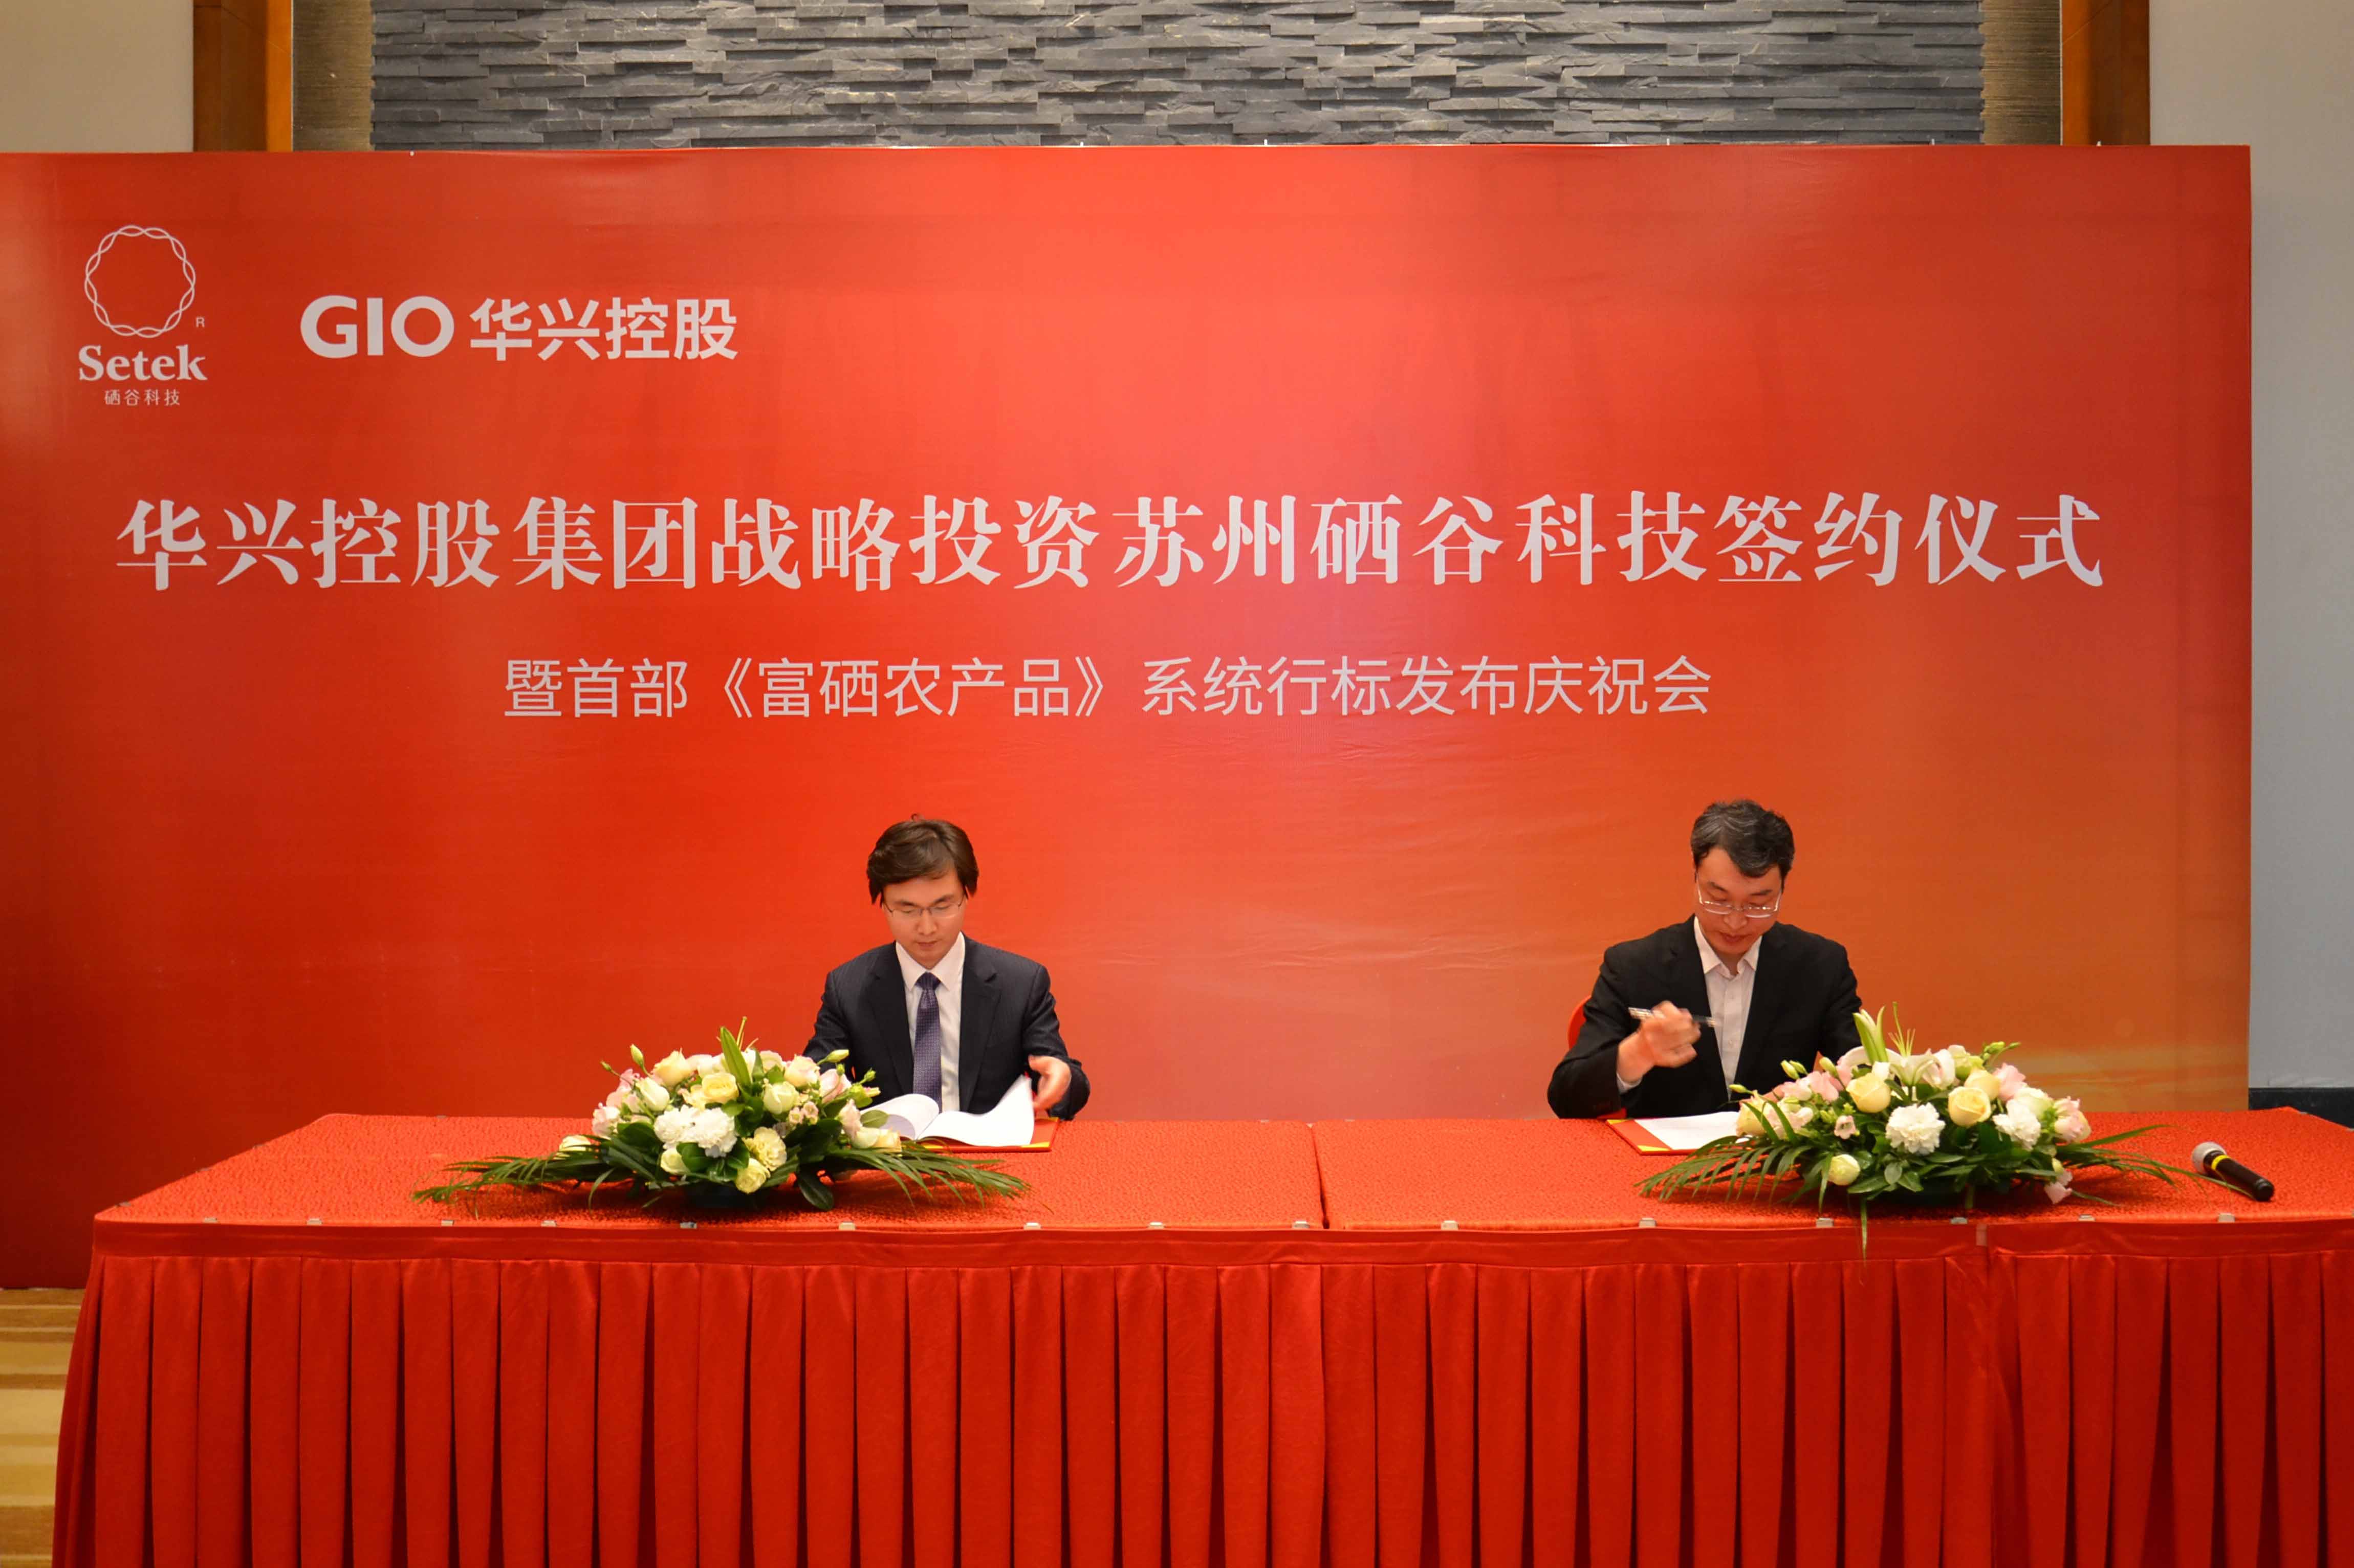 GIO華興控股集團與蘇州硒谷科技有限公司簽約儀式